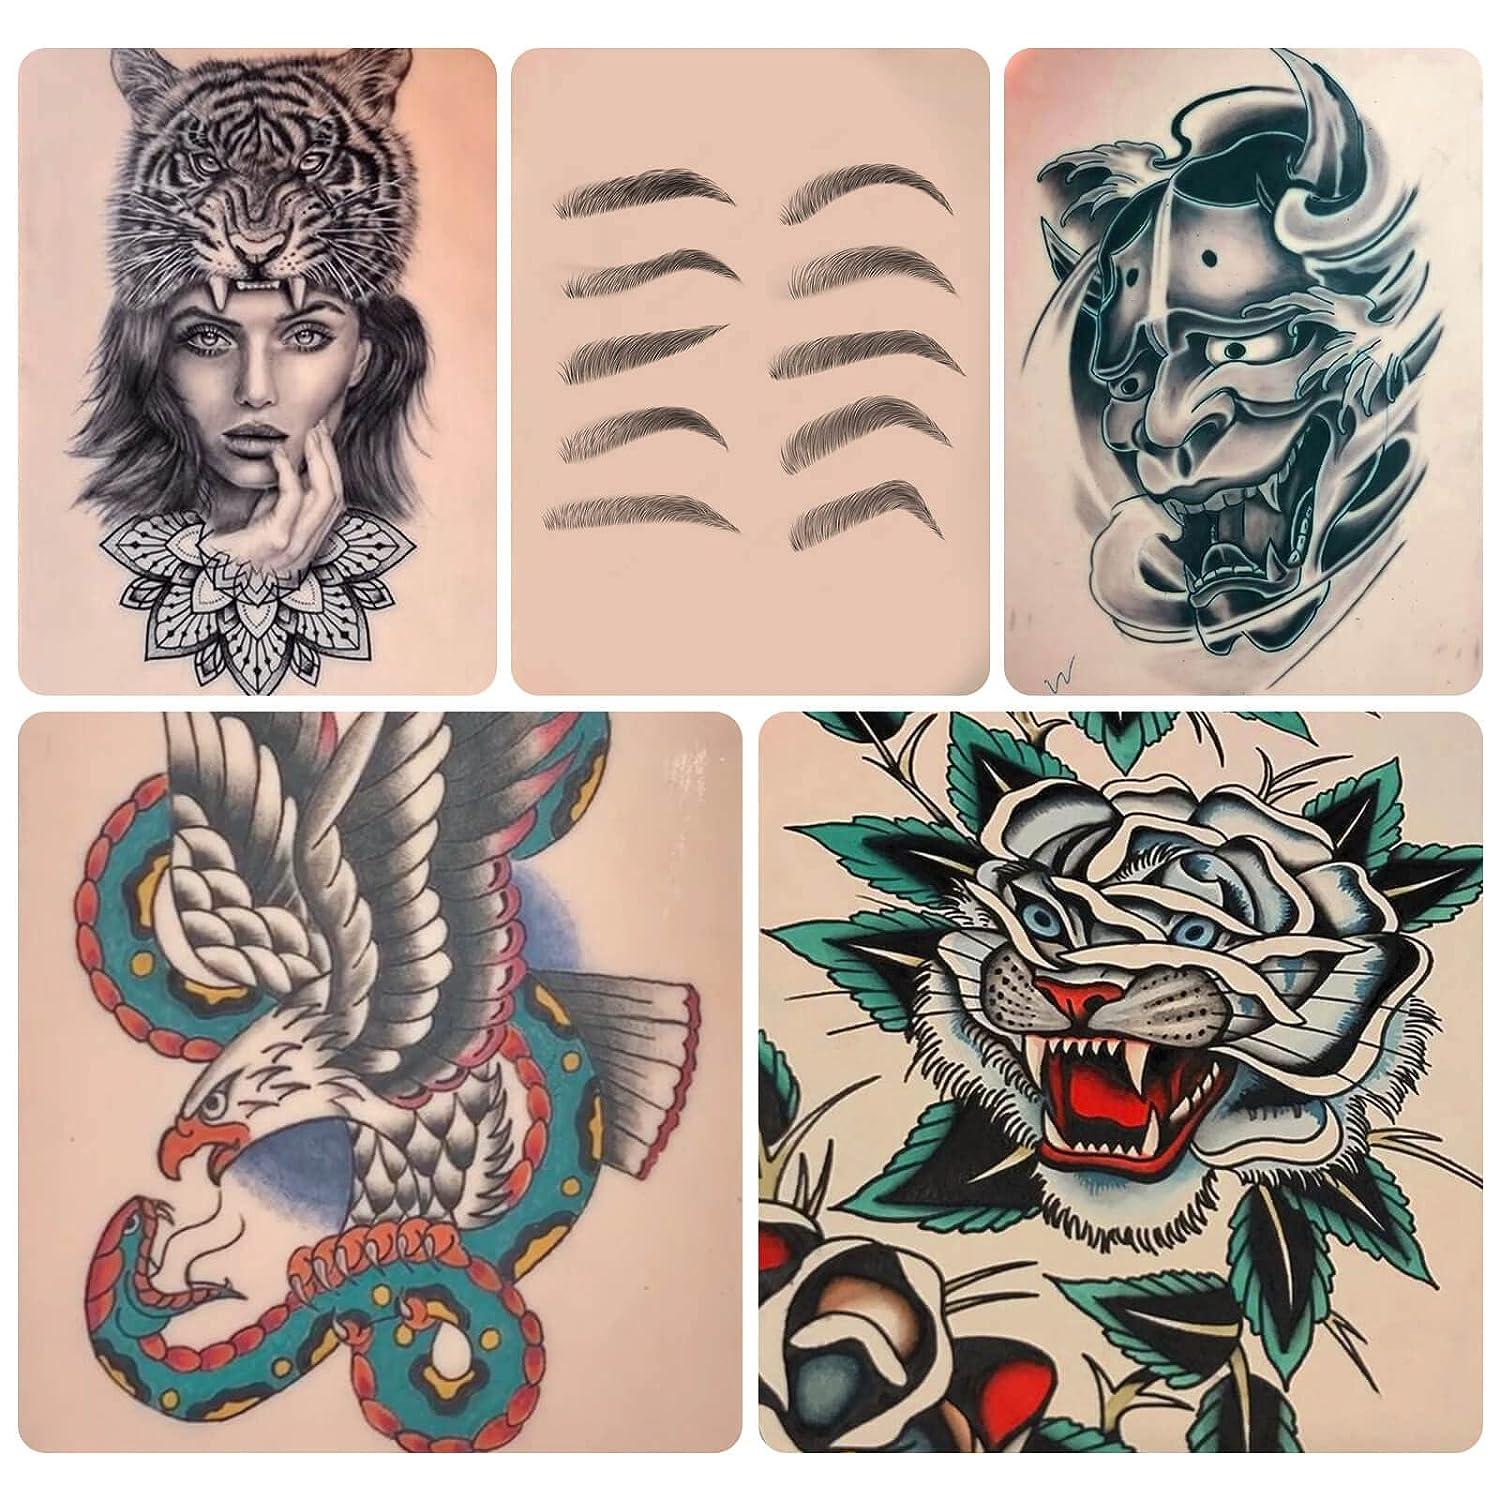 Soft Mandala Back tattoo - Best Tattoo Ideas Gallery